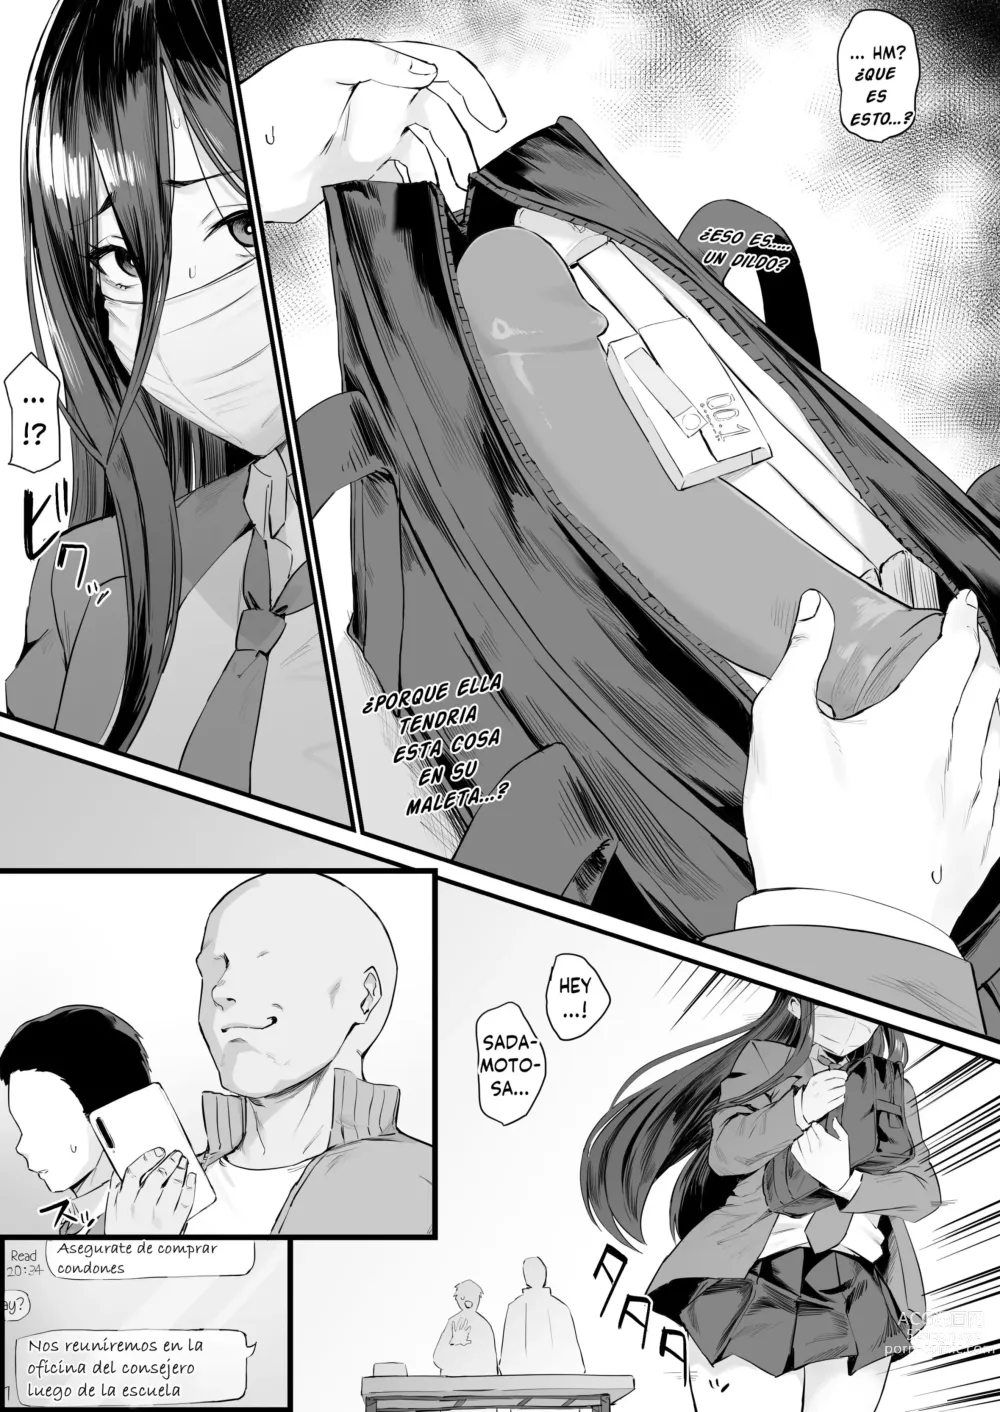 Page 2 of doujinshi La chica atrapada durante la inspección